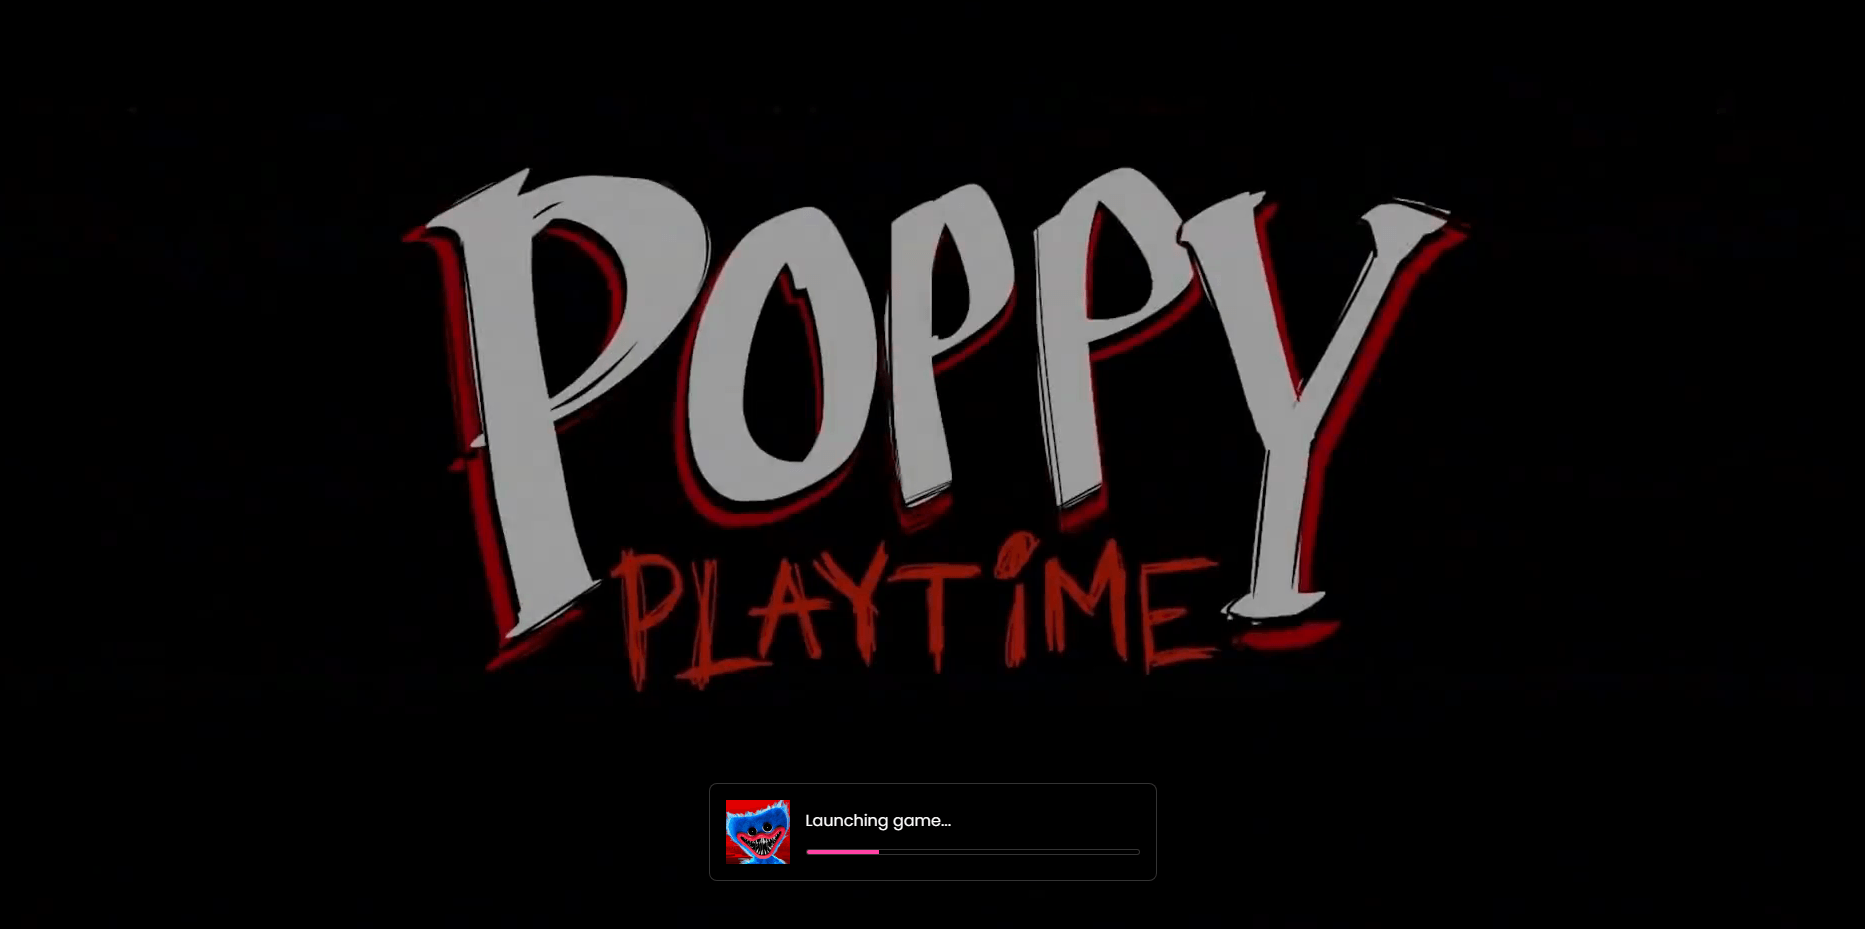 เล่น Poppy Playtime ได้ทุกที่ด้วย now.gg InstaPlay: ทางเลือกบนคลาวด์แทน BlueStacks